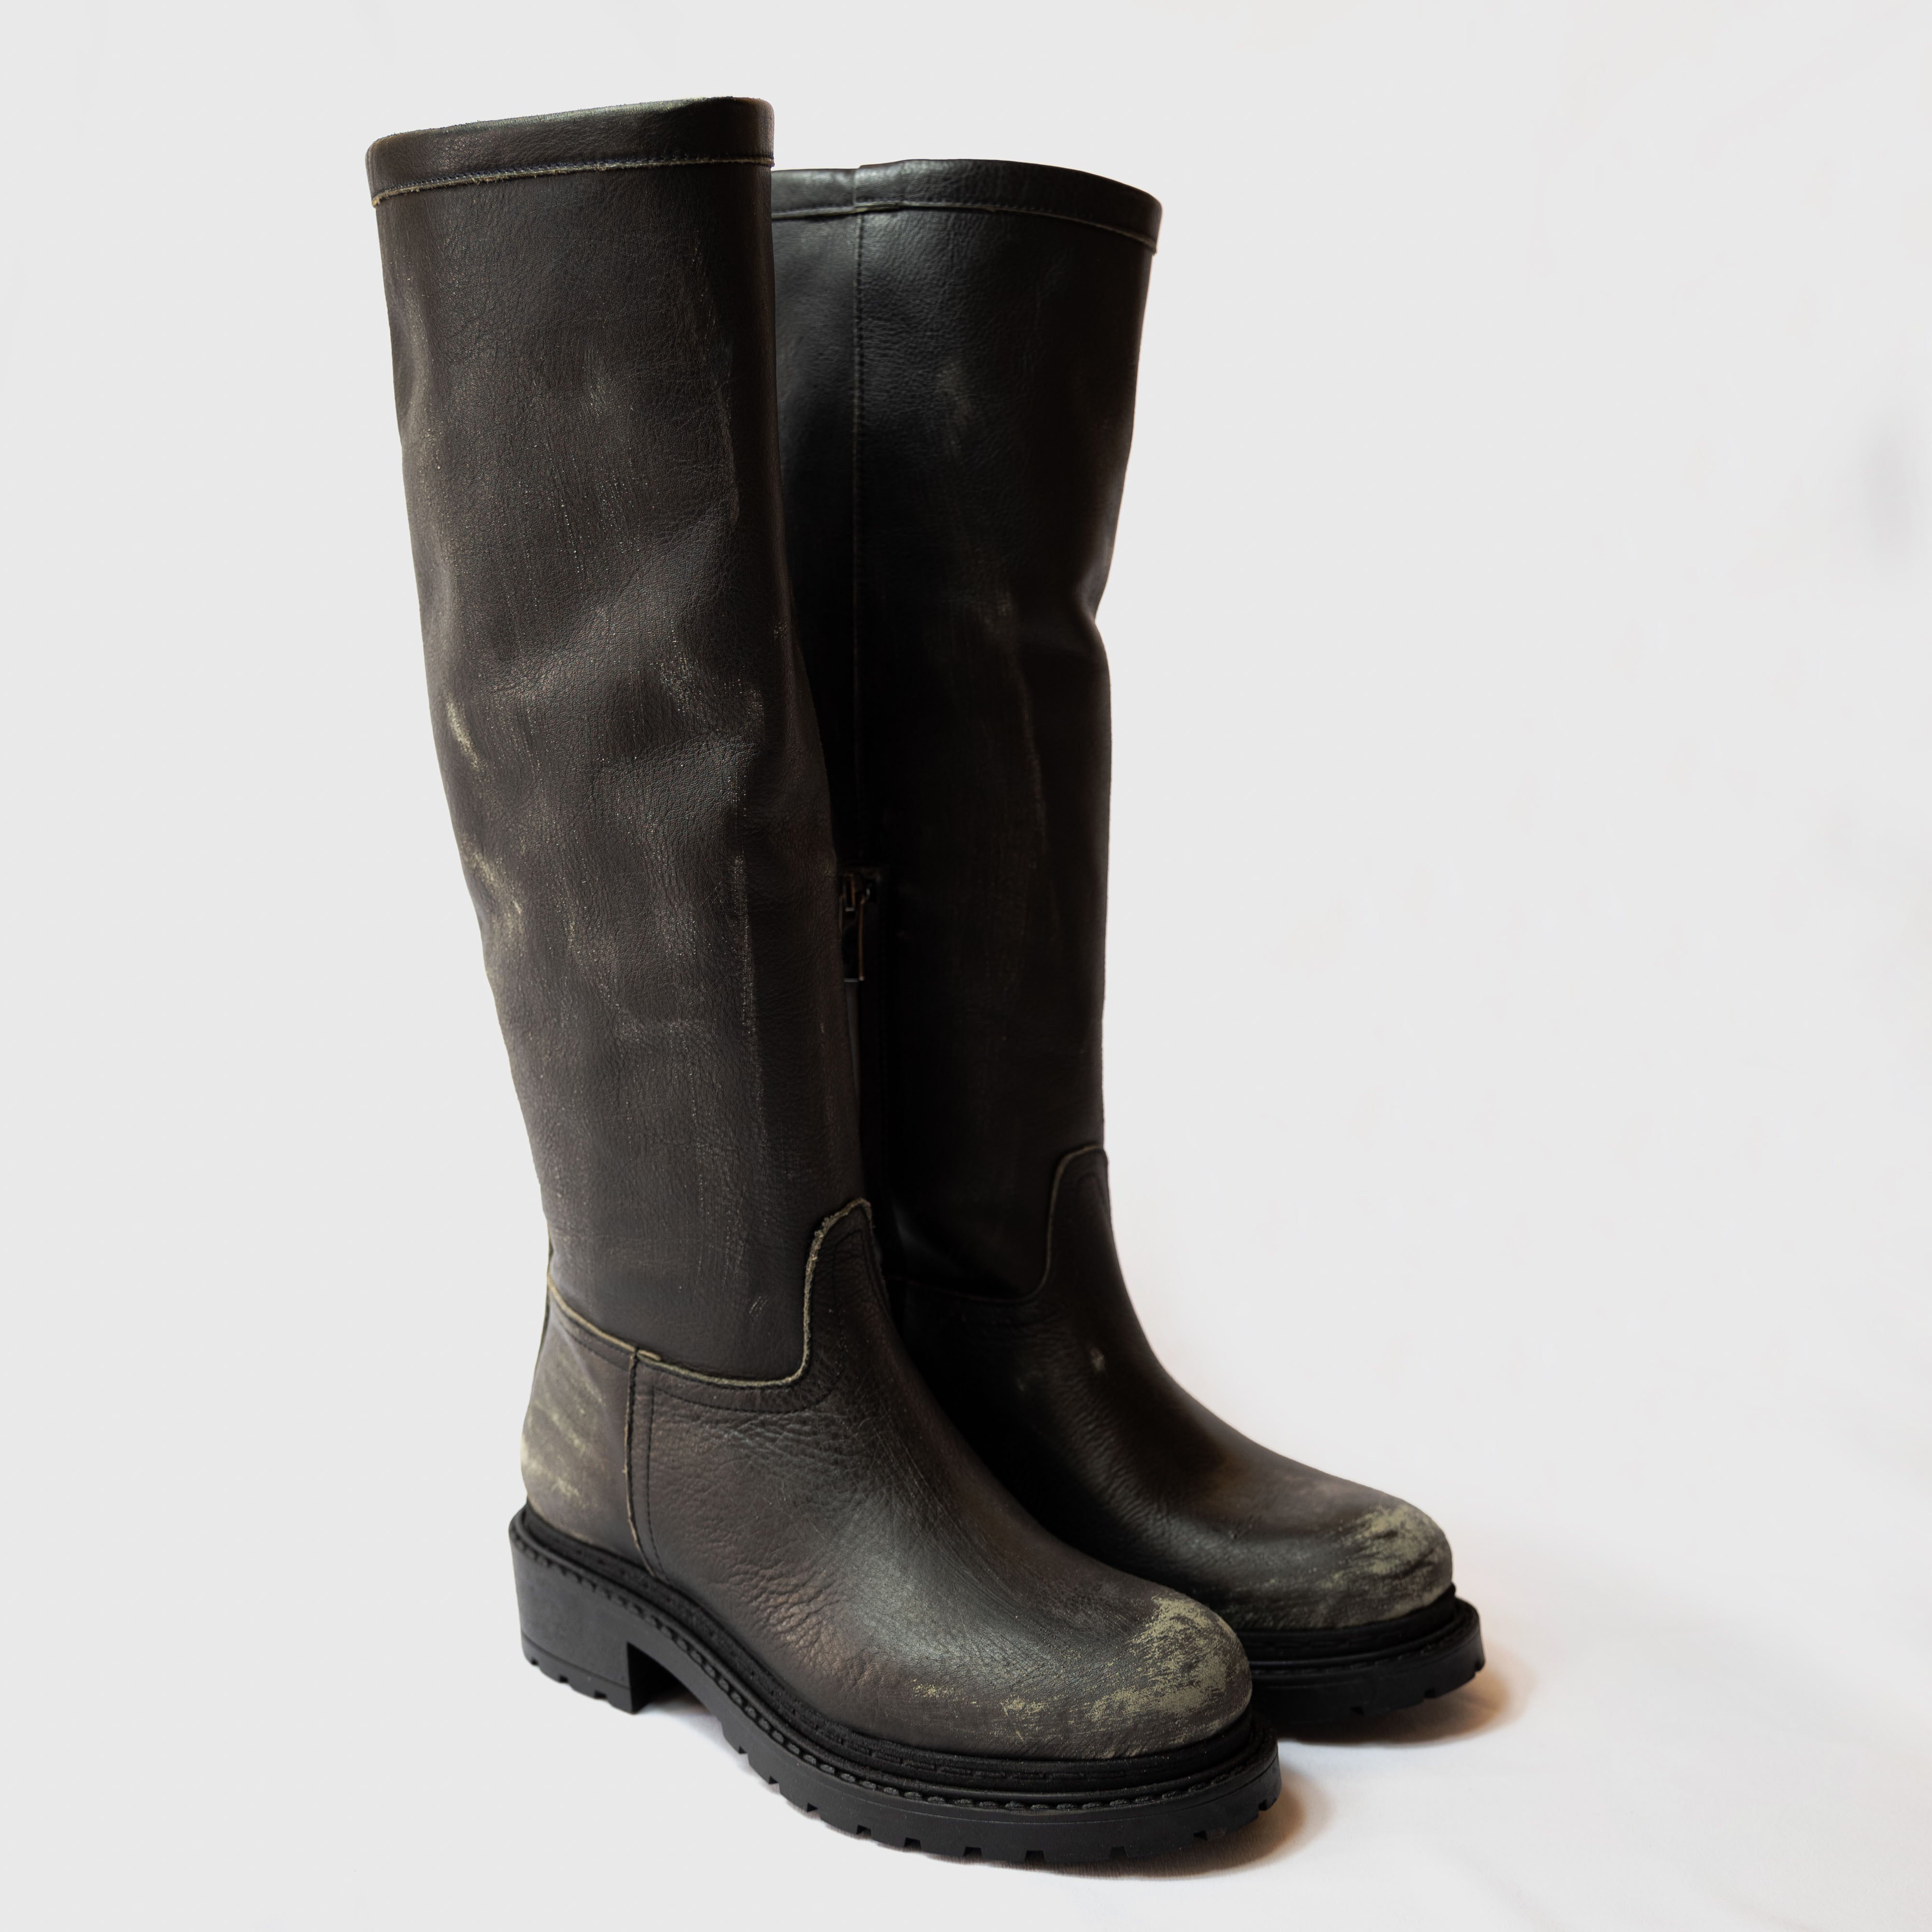 Metisse - Stivali in pelle color asfalto fondo in gomma